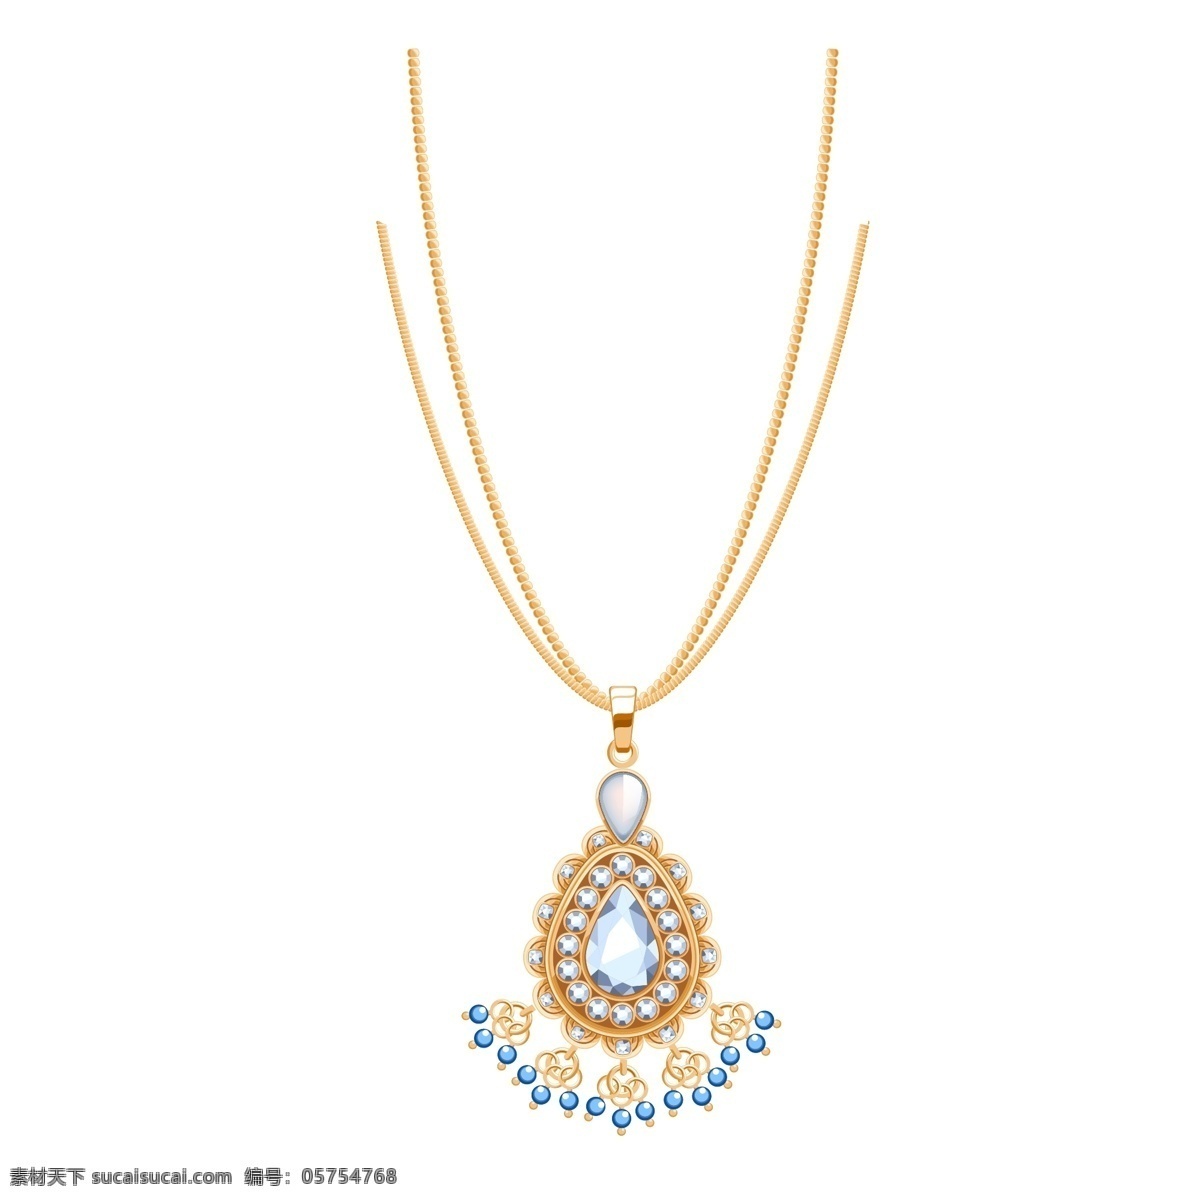 黄金 蓝宝石 项链 珠宝首饰 商用 元素 首饰元素 珠宝素材 蓝宝石项链 项链元素